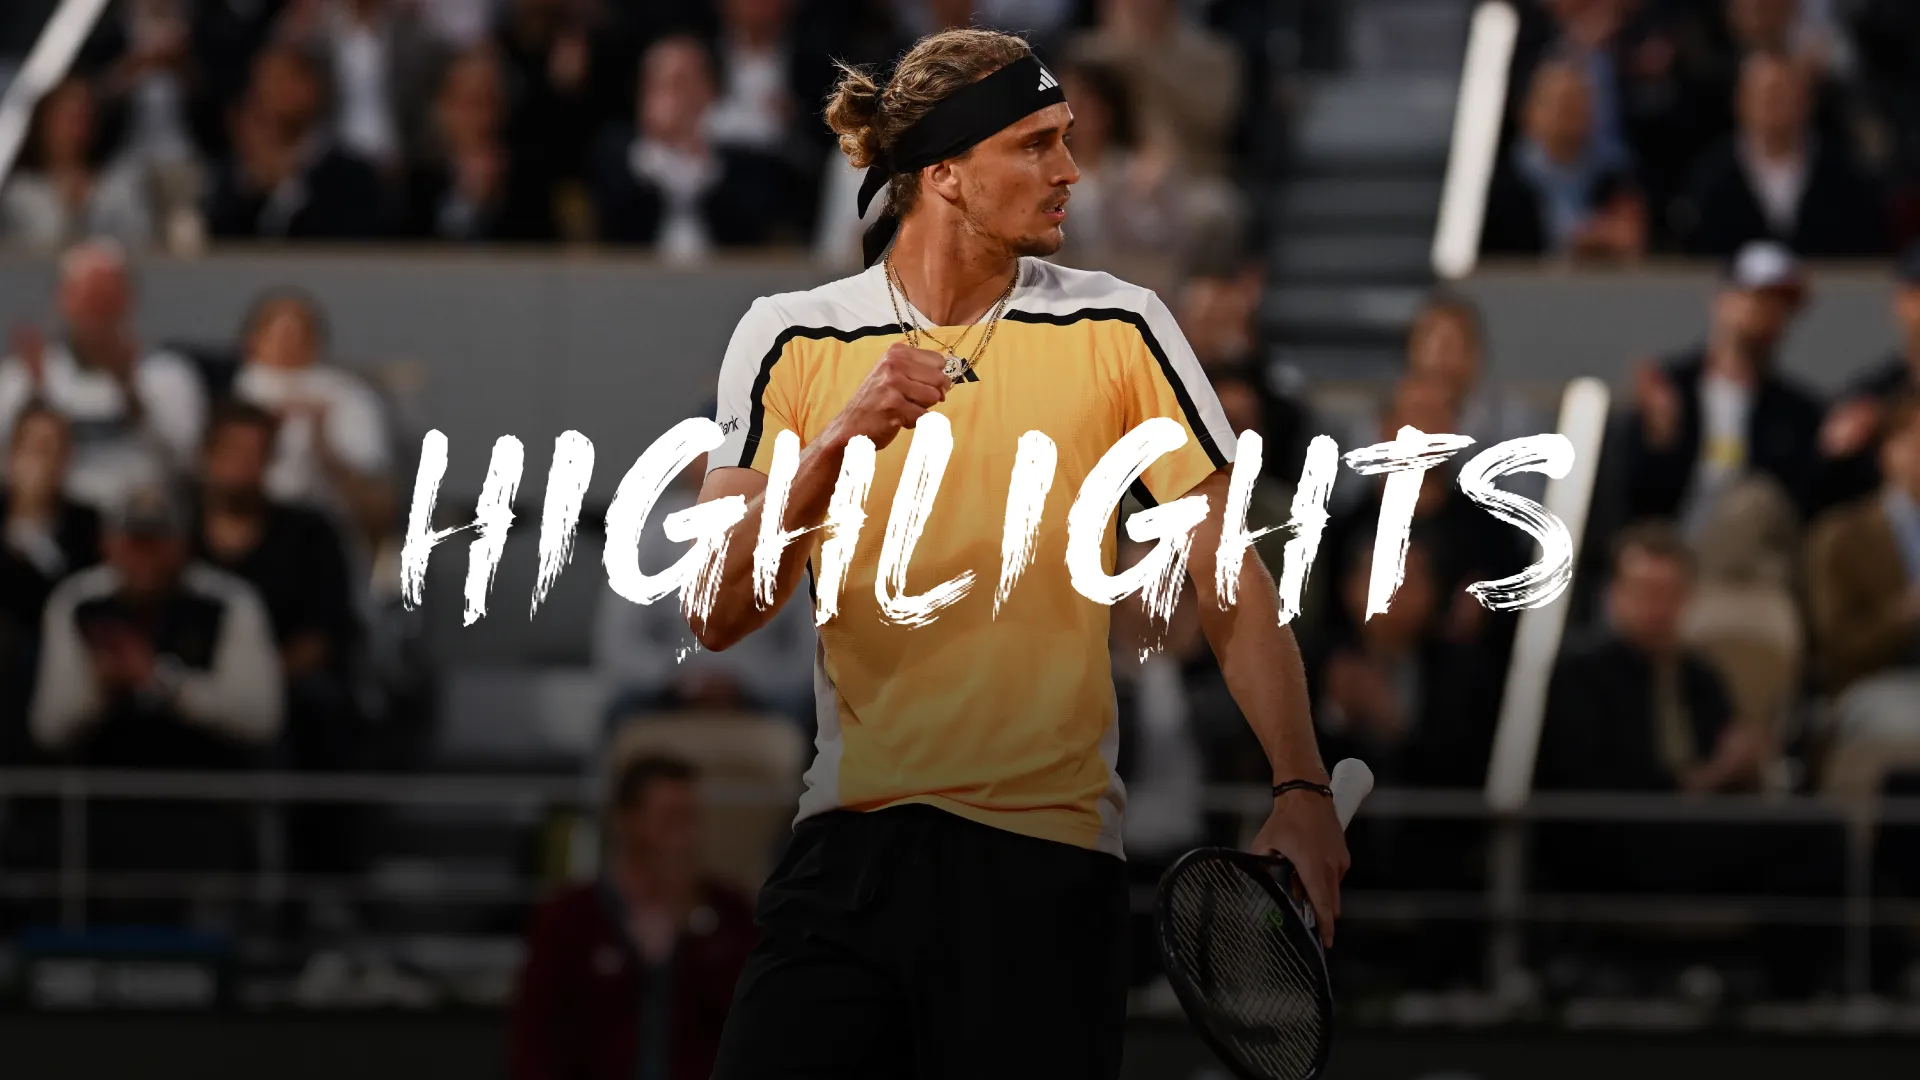 French Open - Achtelfinale: Zverev bezwingt Rune nach 4:11 Stunden - Highlights